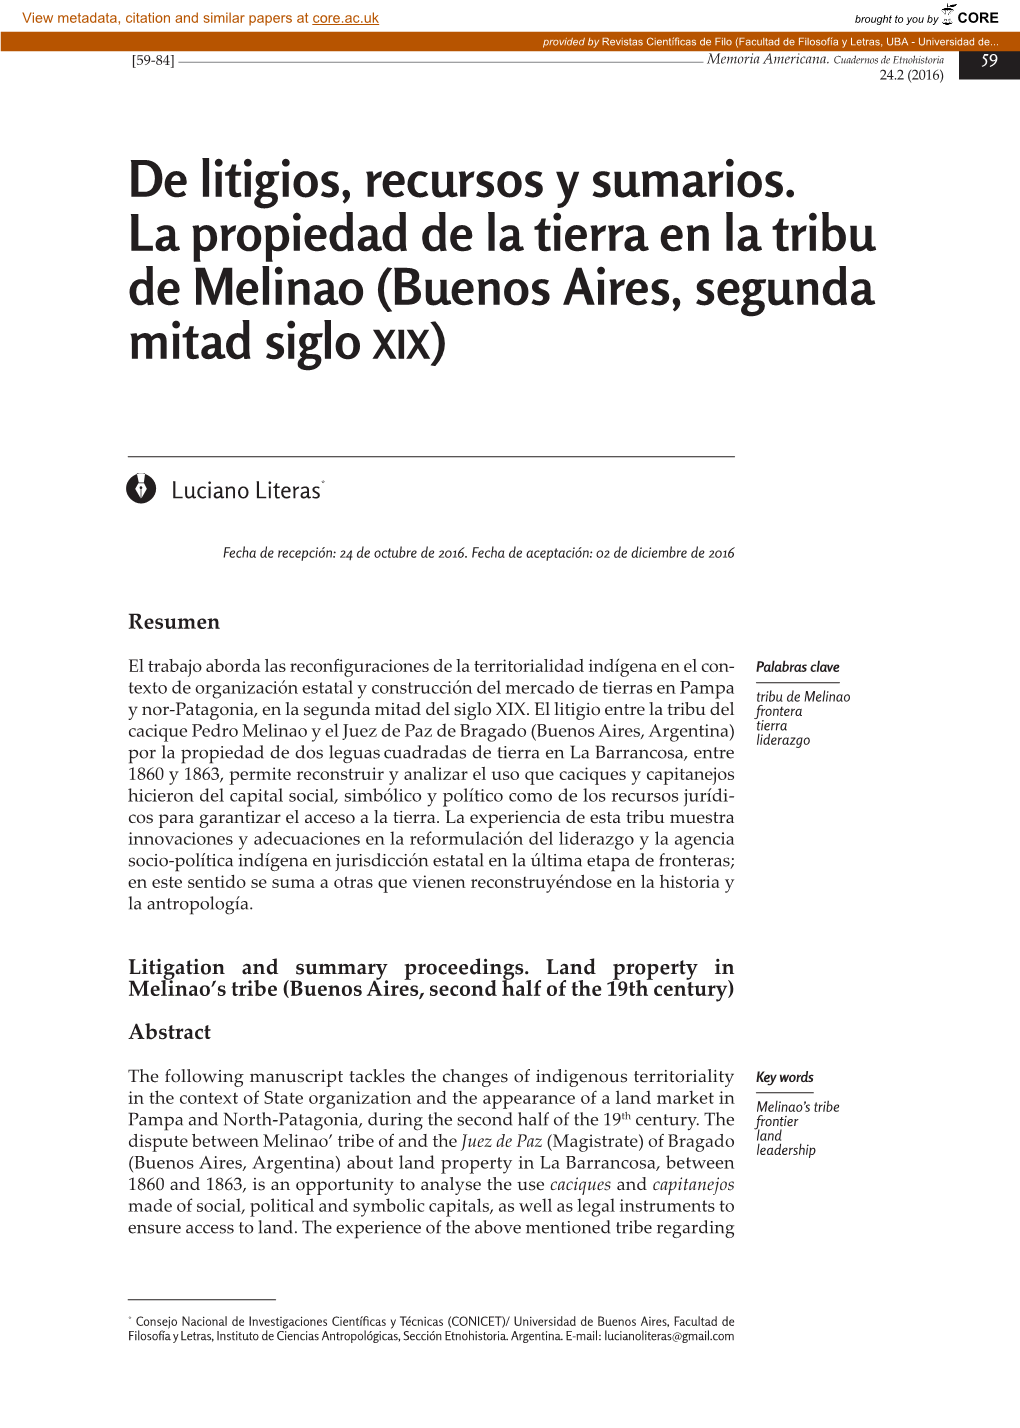 De Litigios, Recursos Y Sumarios. La Propiedad De La Tierra En La Tribu De Melinao (Buenos Aires, Segunda Mitad Siglo XIX)